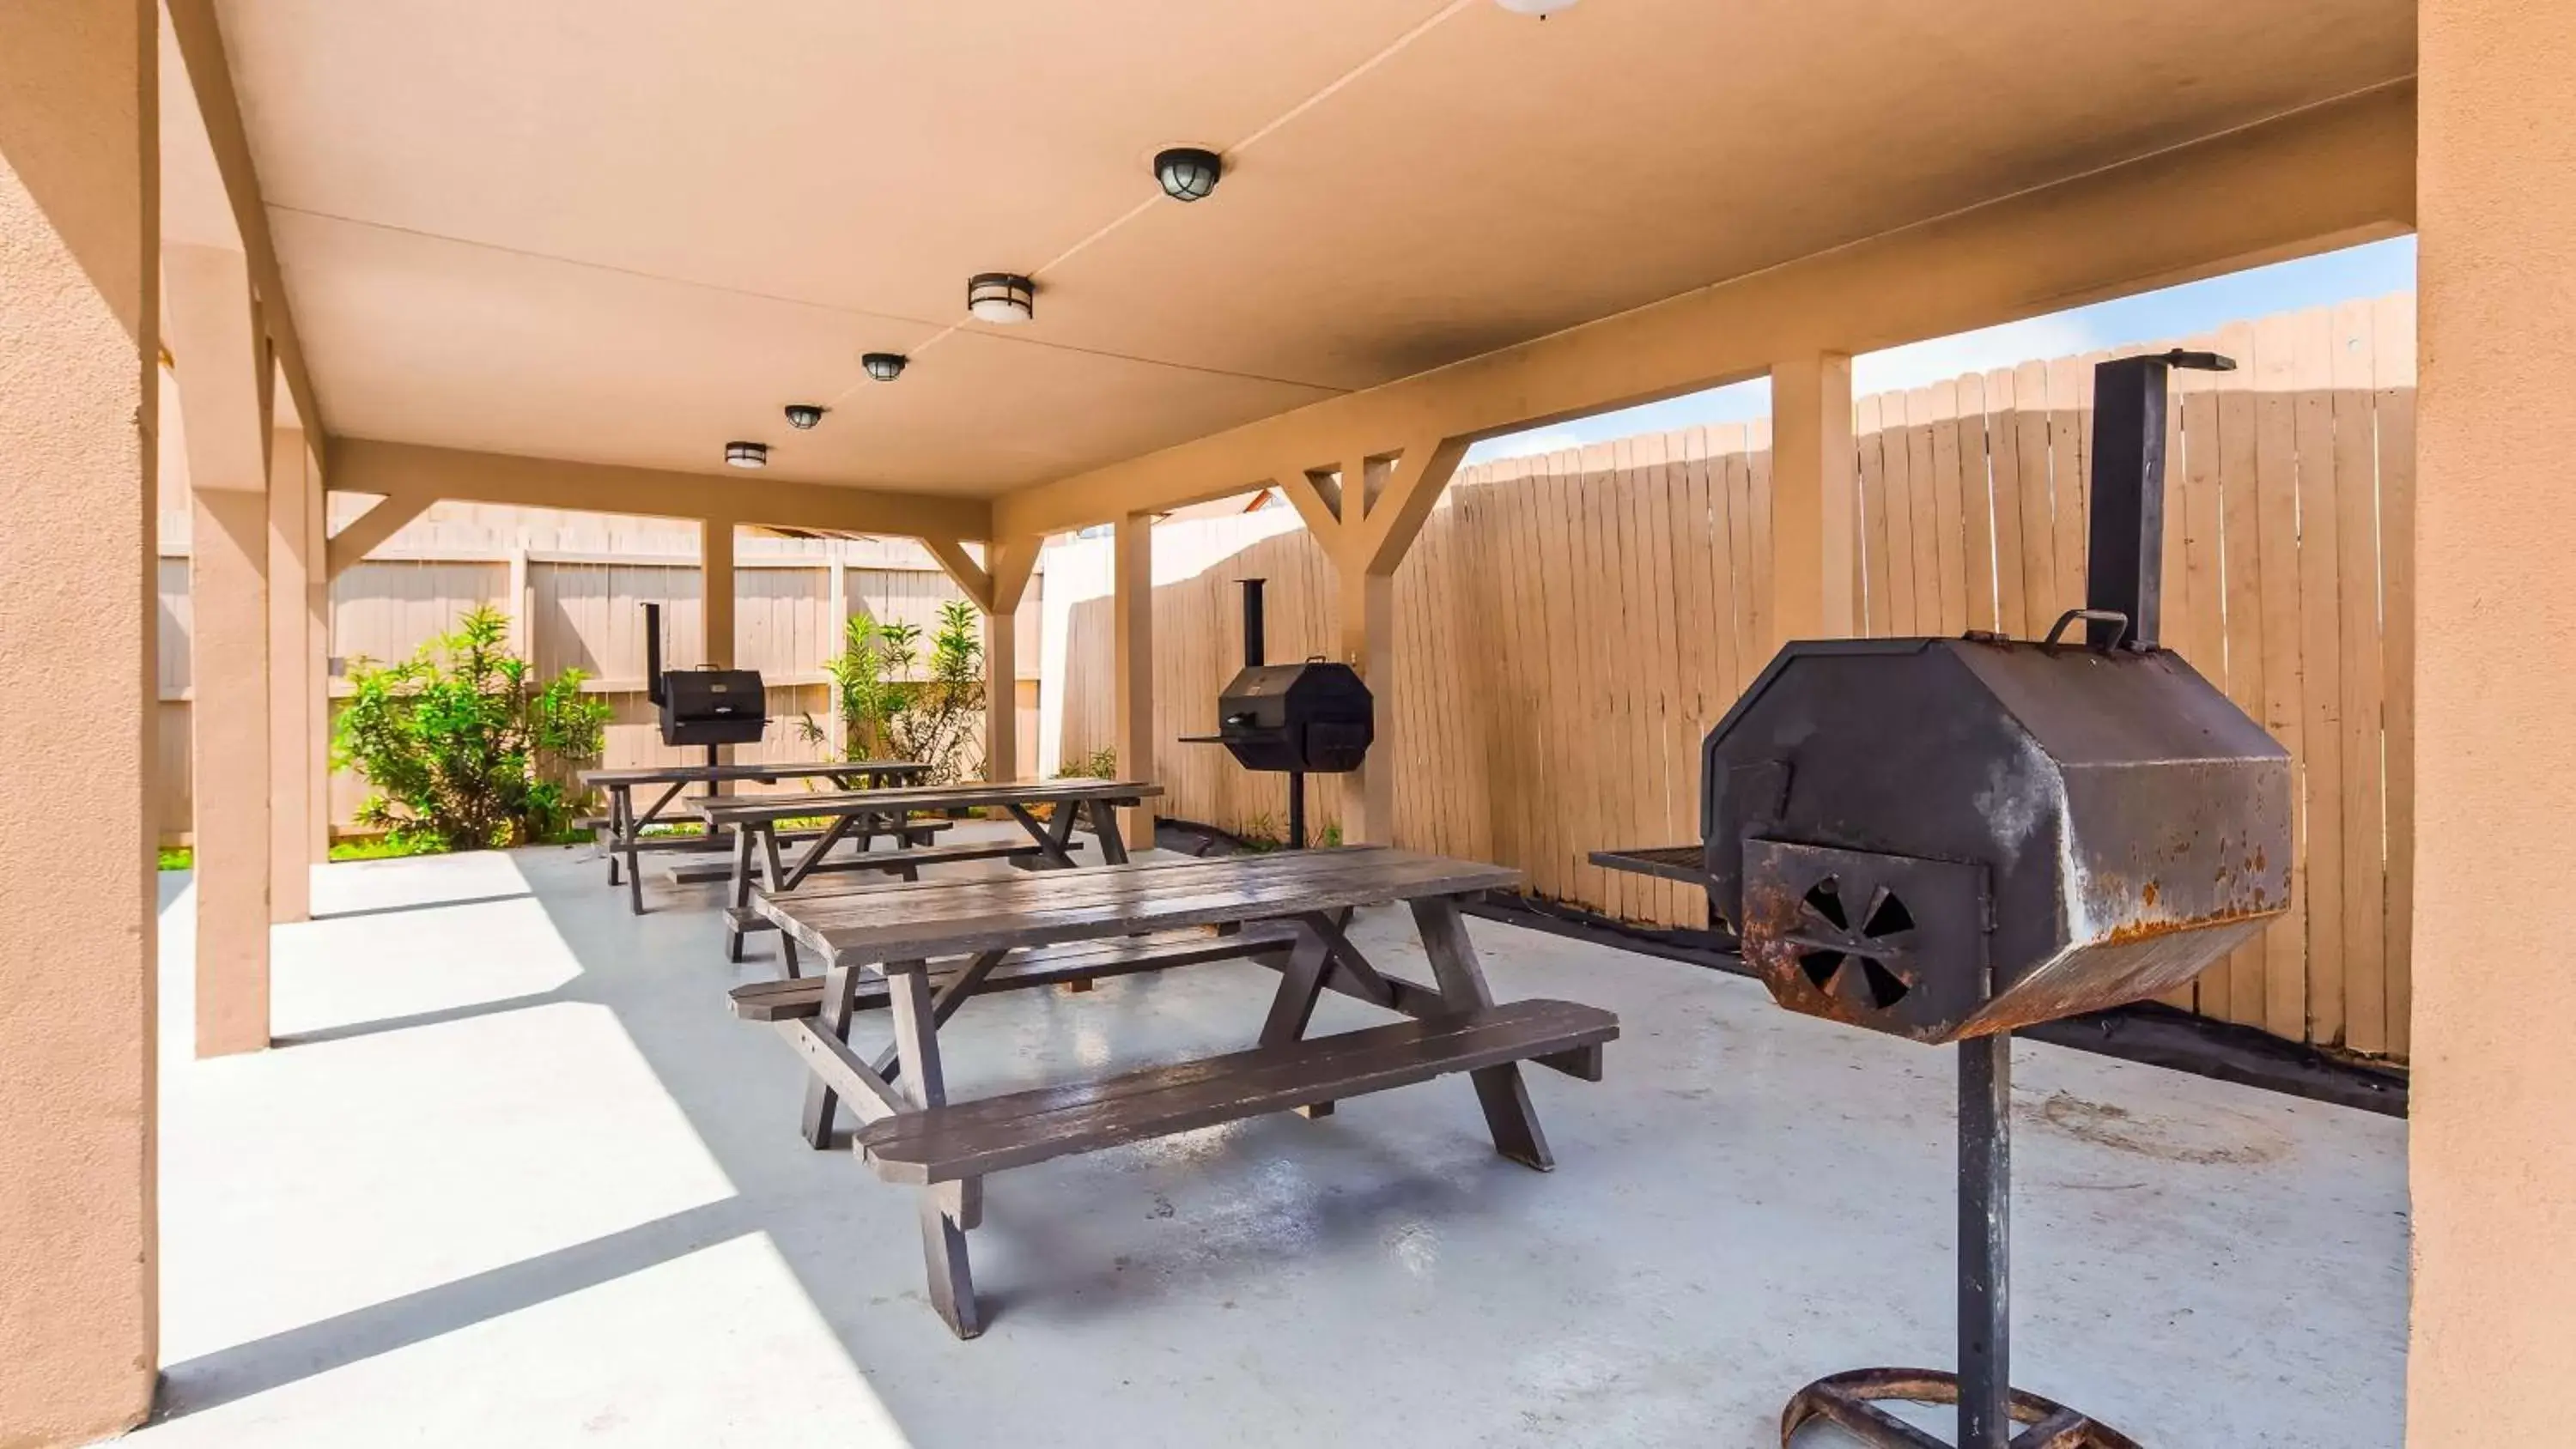 On site, BBQ Facilities in Best Western Plus Carrizo Springs Inn & Suites